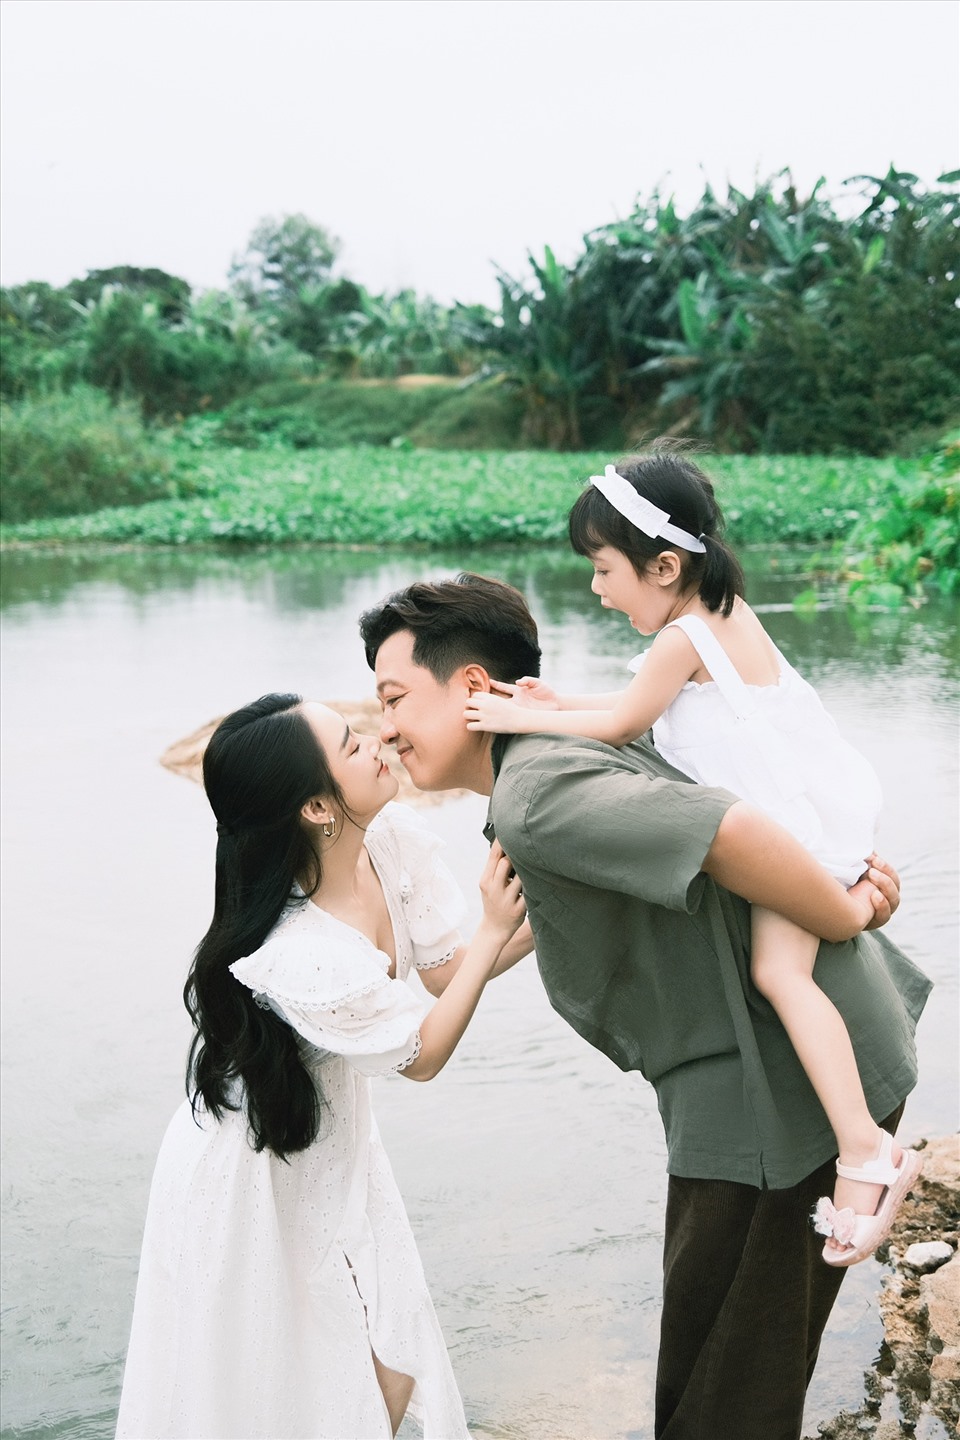 Nhã Phương - Trường Giang có cuộc sống hôn nhân hạnh phúc bên con gái nhỏ. Ảnh: Nhân vật cung cấp